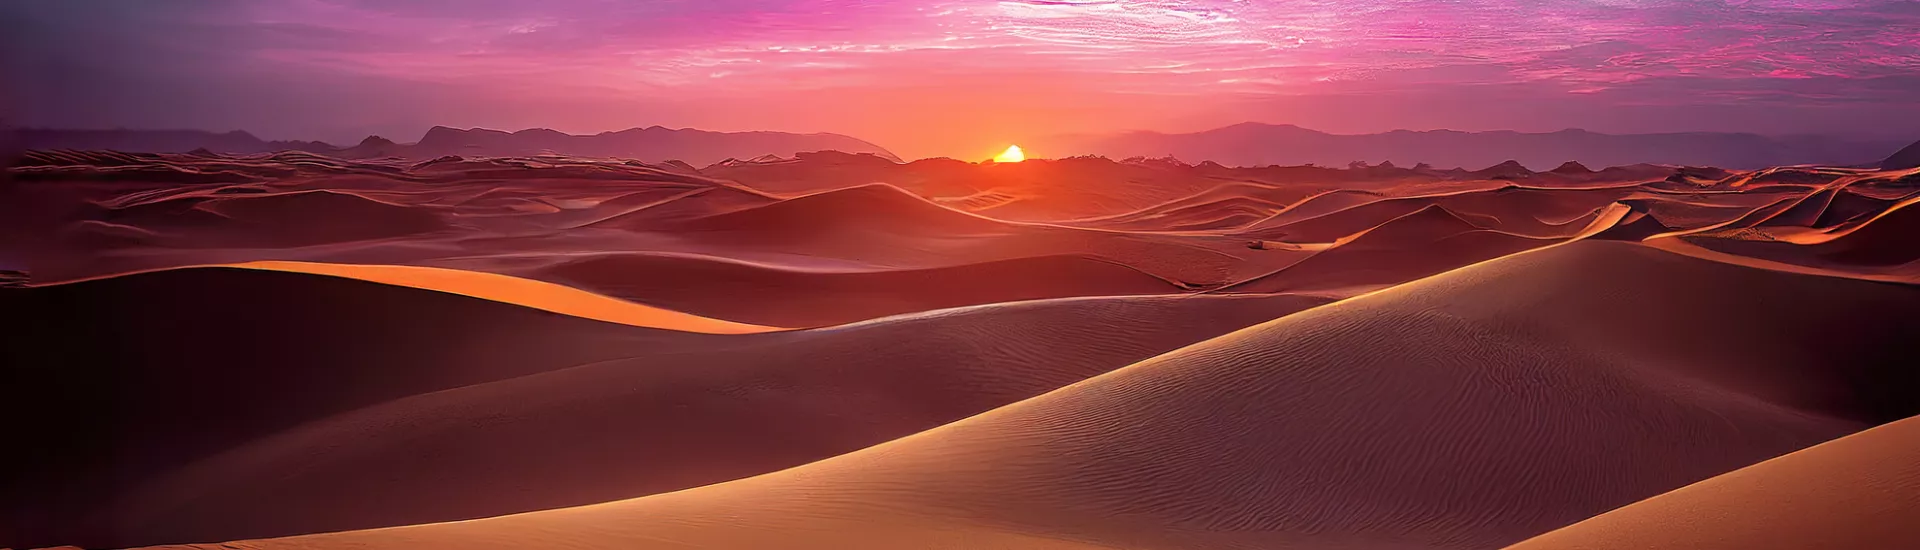 desert in Morocco